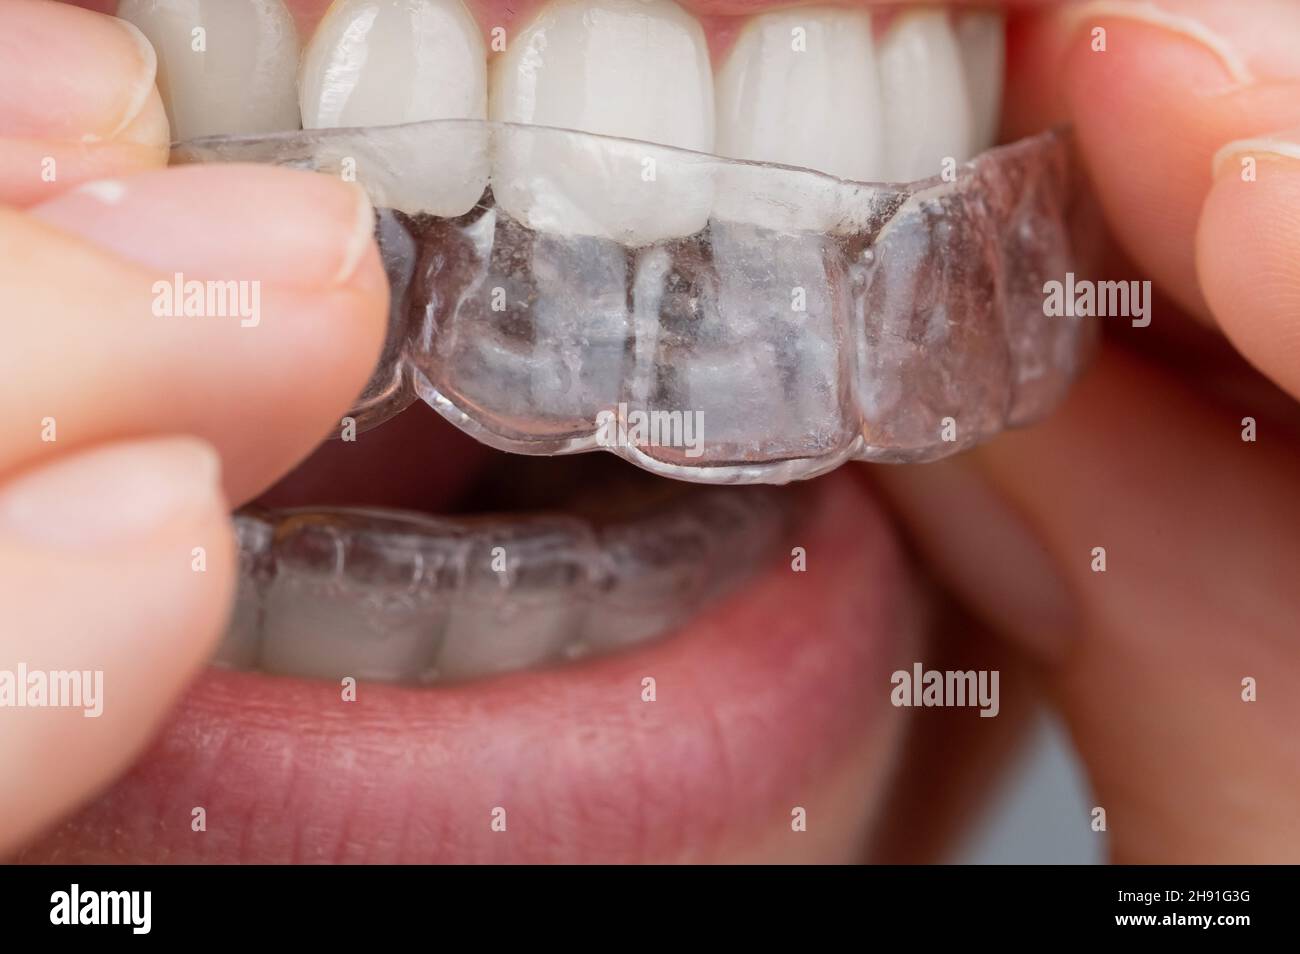 Femme caucasienne mettant sur des aligneurs.Dispositif de lissage des dents orthodontiques. Banque D'Images